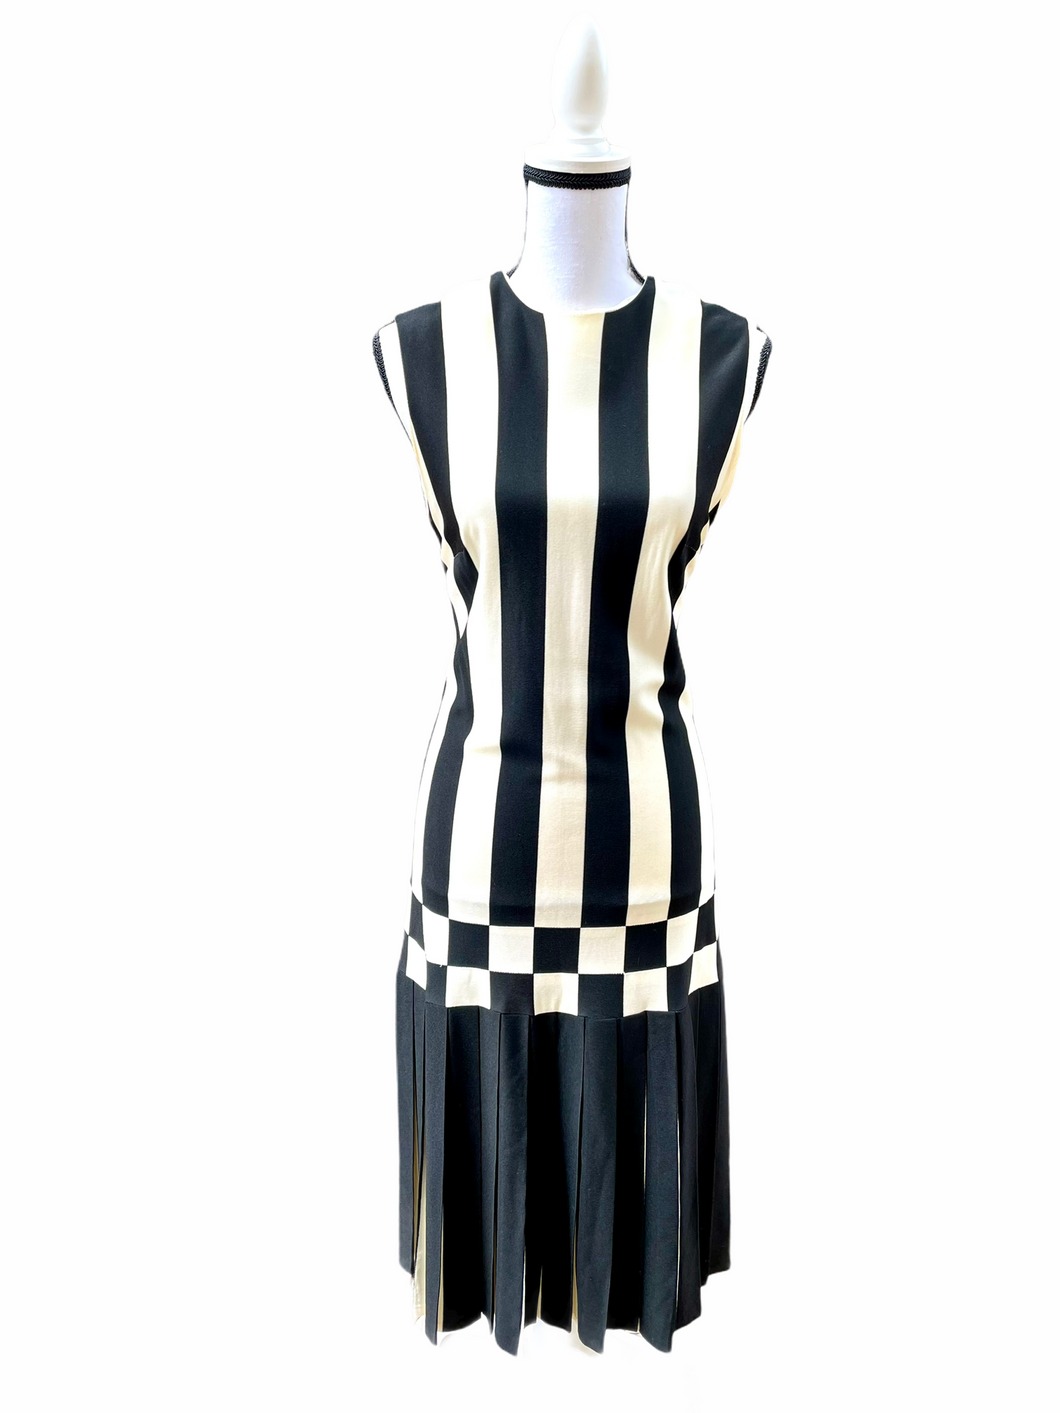 Vintage Mod Black & White Striped Dress